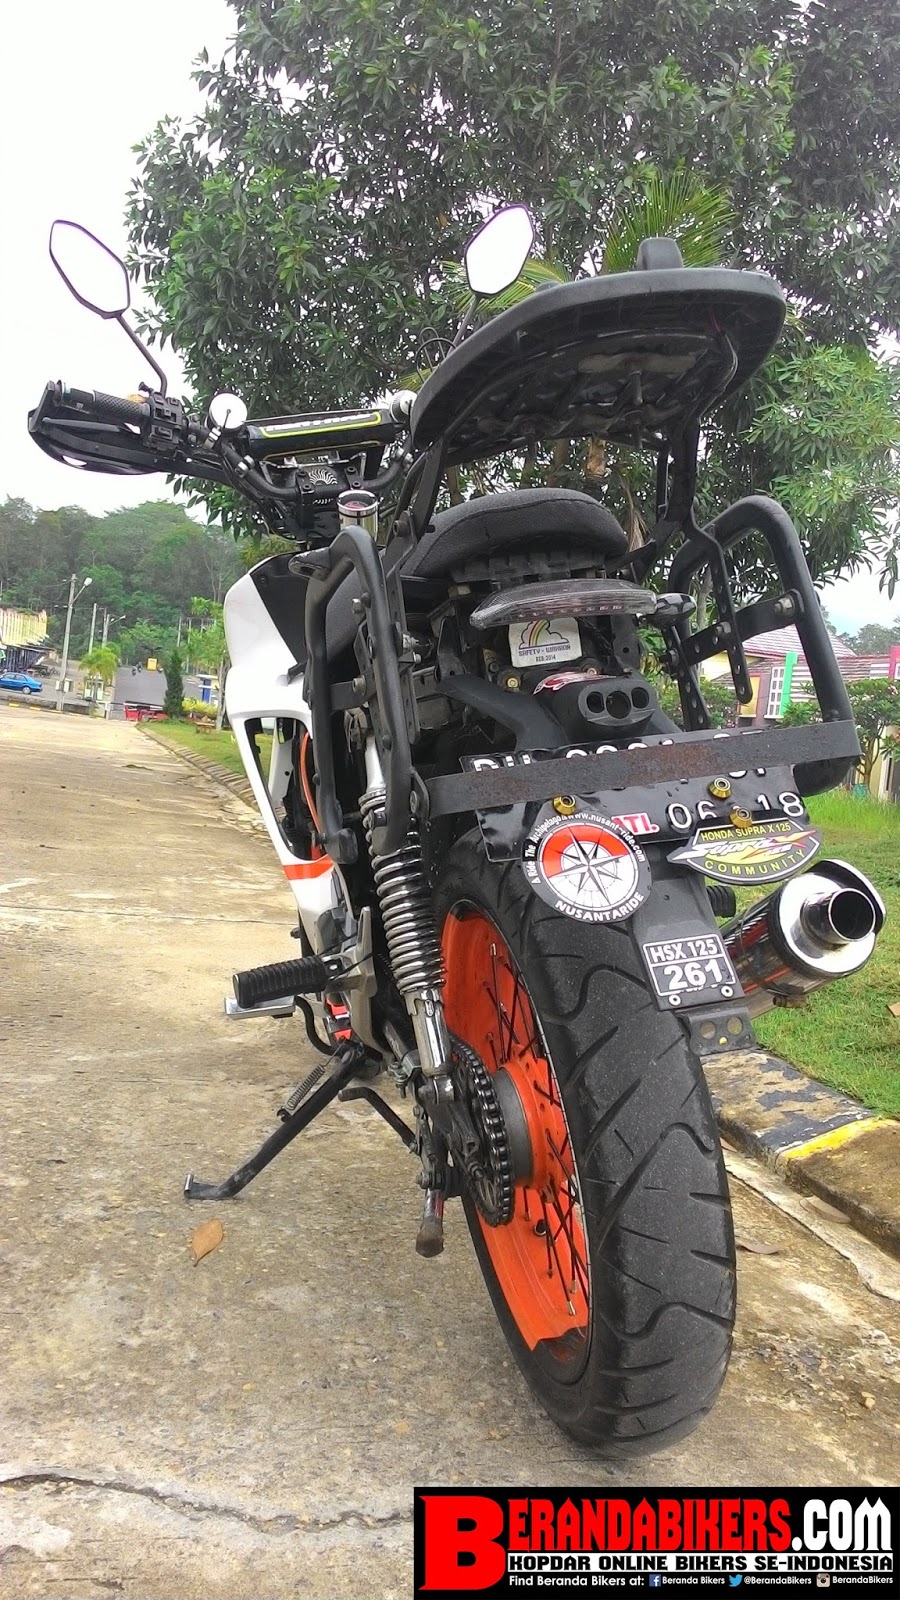 BerandaBikerscom Kopdar Online Bikers Indonesia Modifikasi